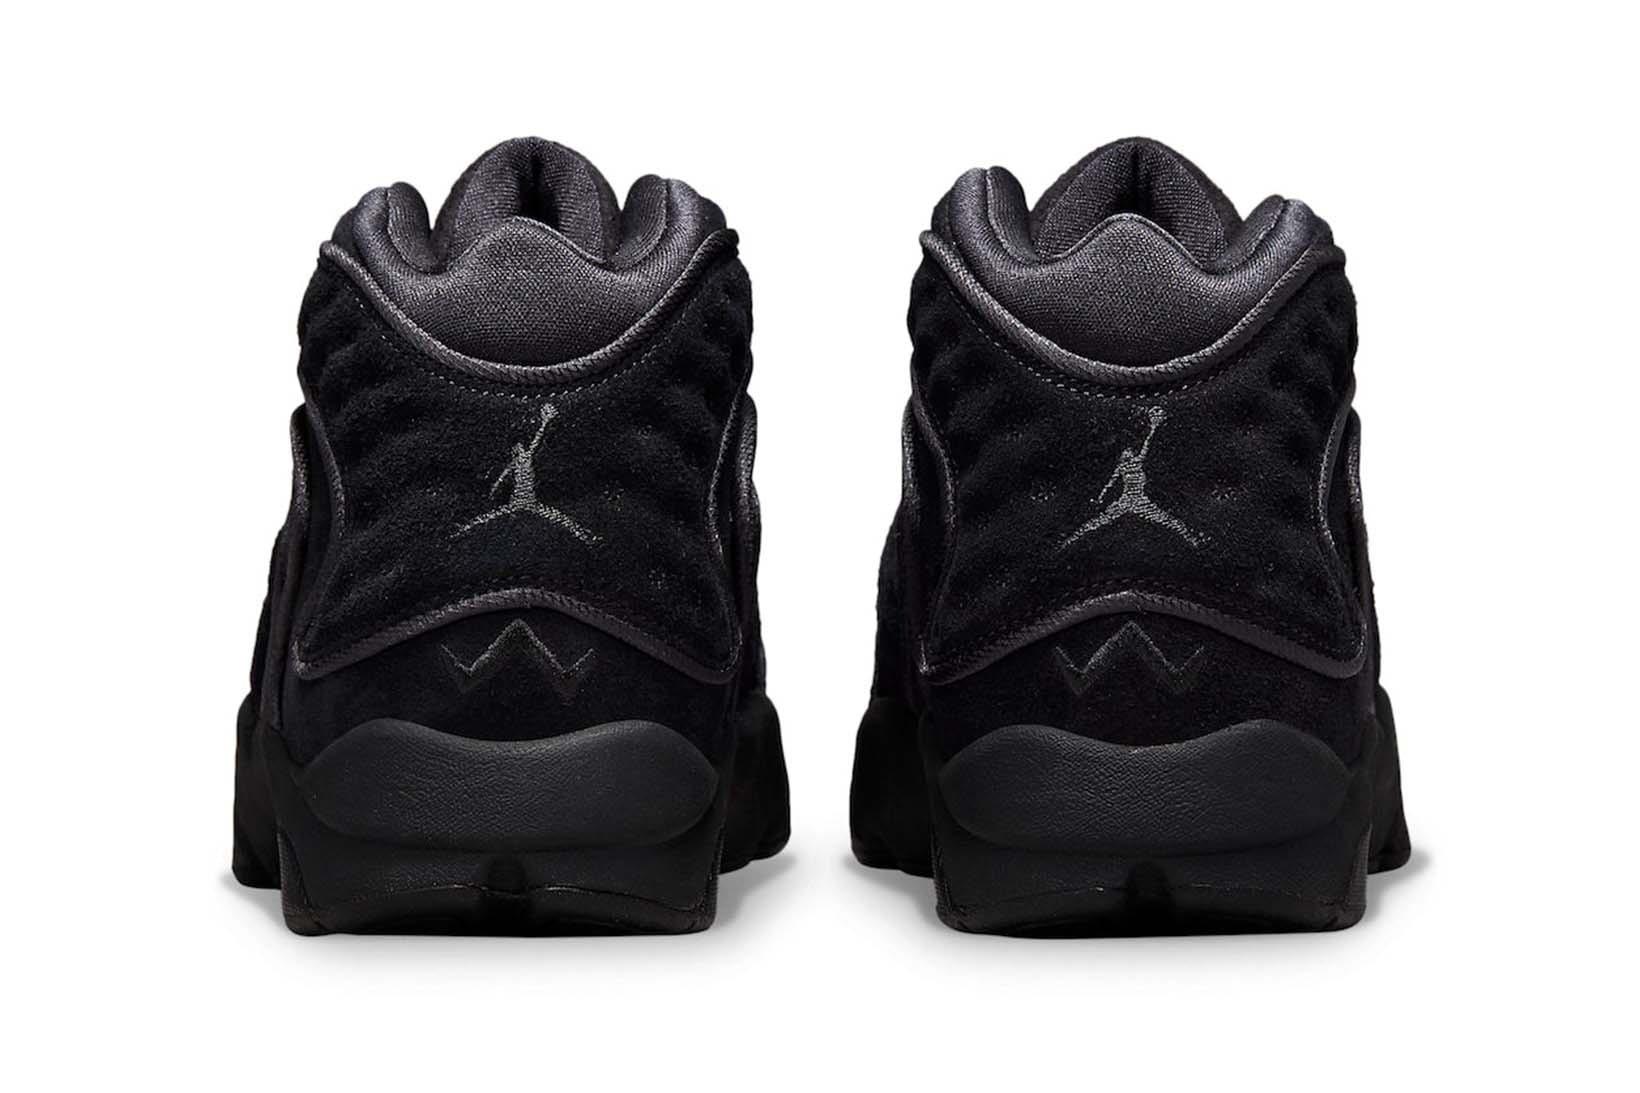 Nike Air Jordan Womens Sneakers OG Black Metallic Gold Holiday Release Date Footwear Shoes Kicks